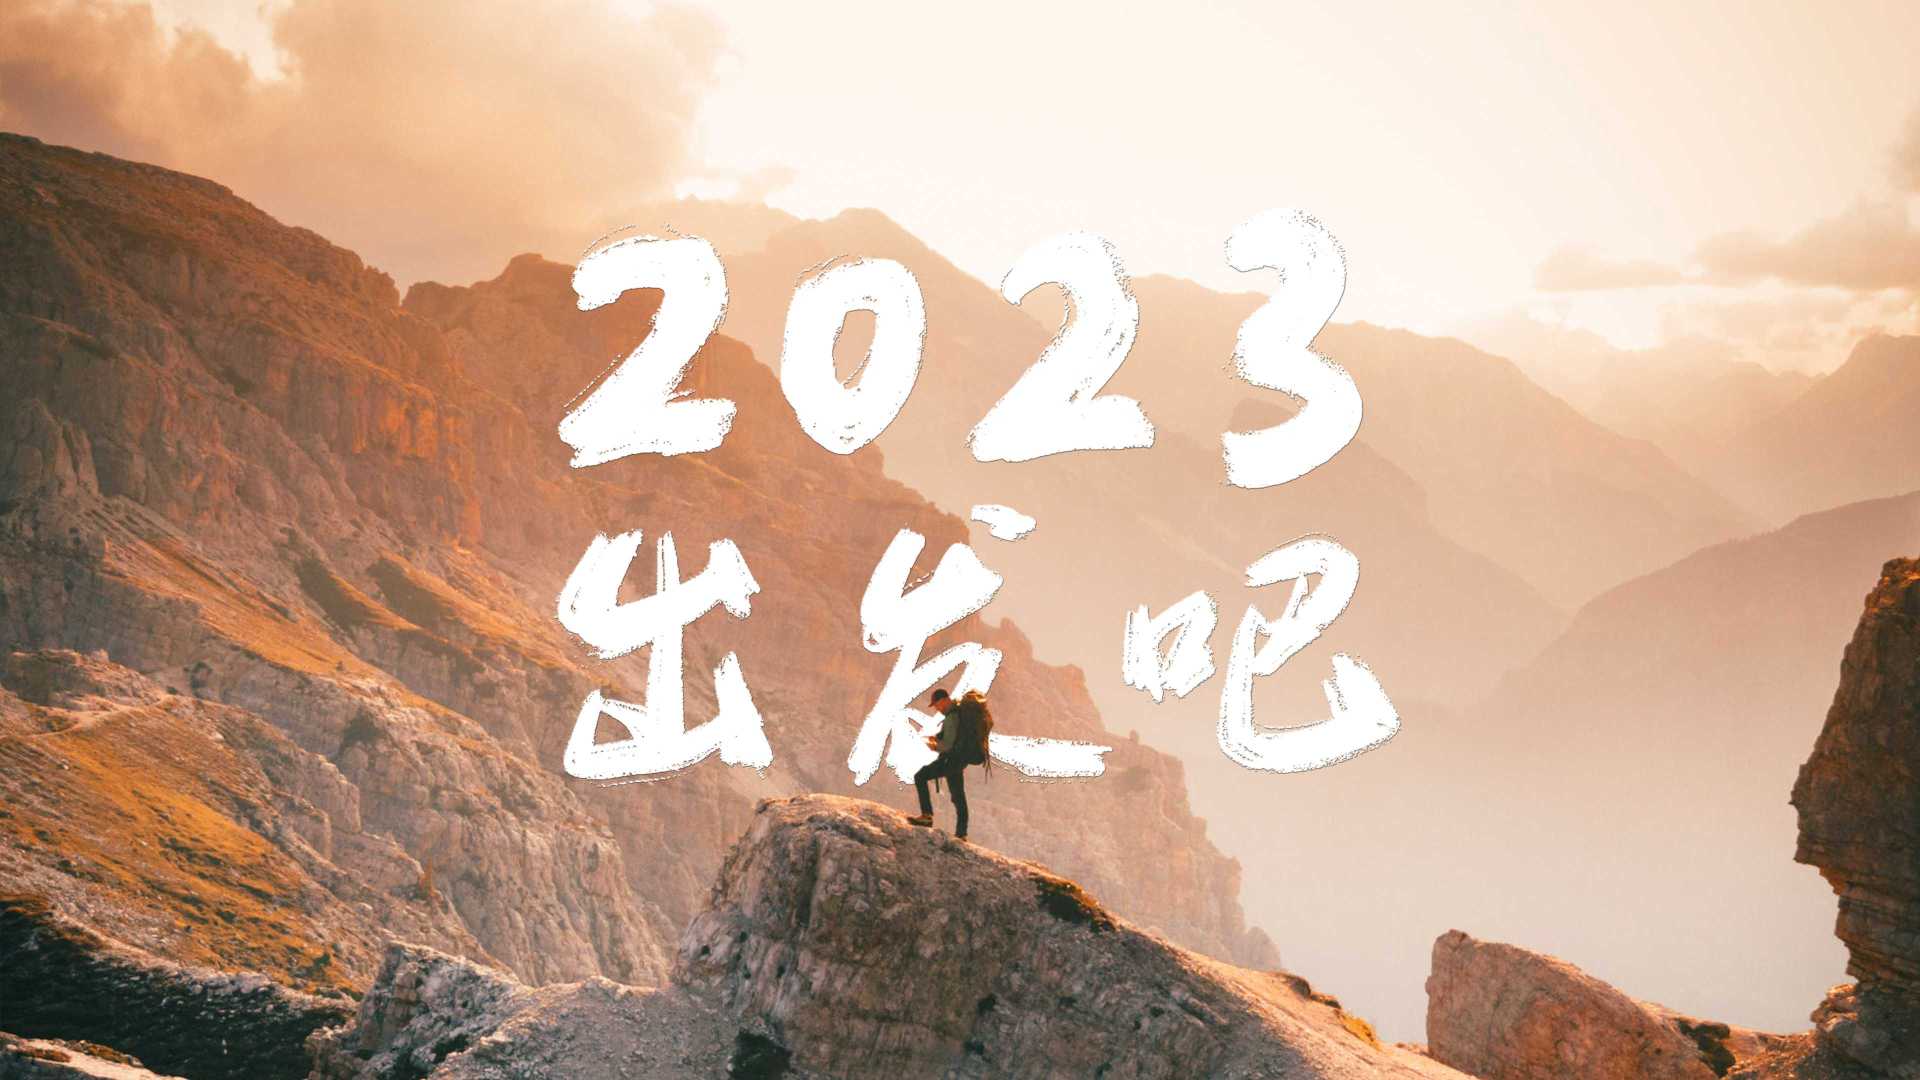 2023 出發吧丨DJI 大疆創新 2022 年度視頻